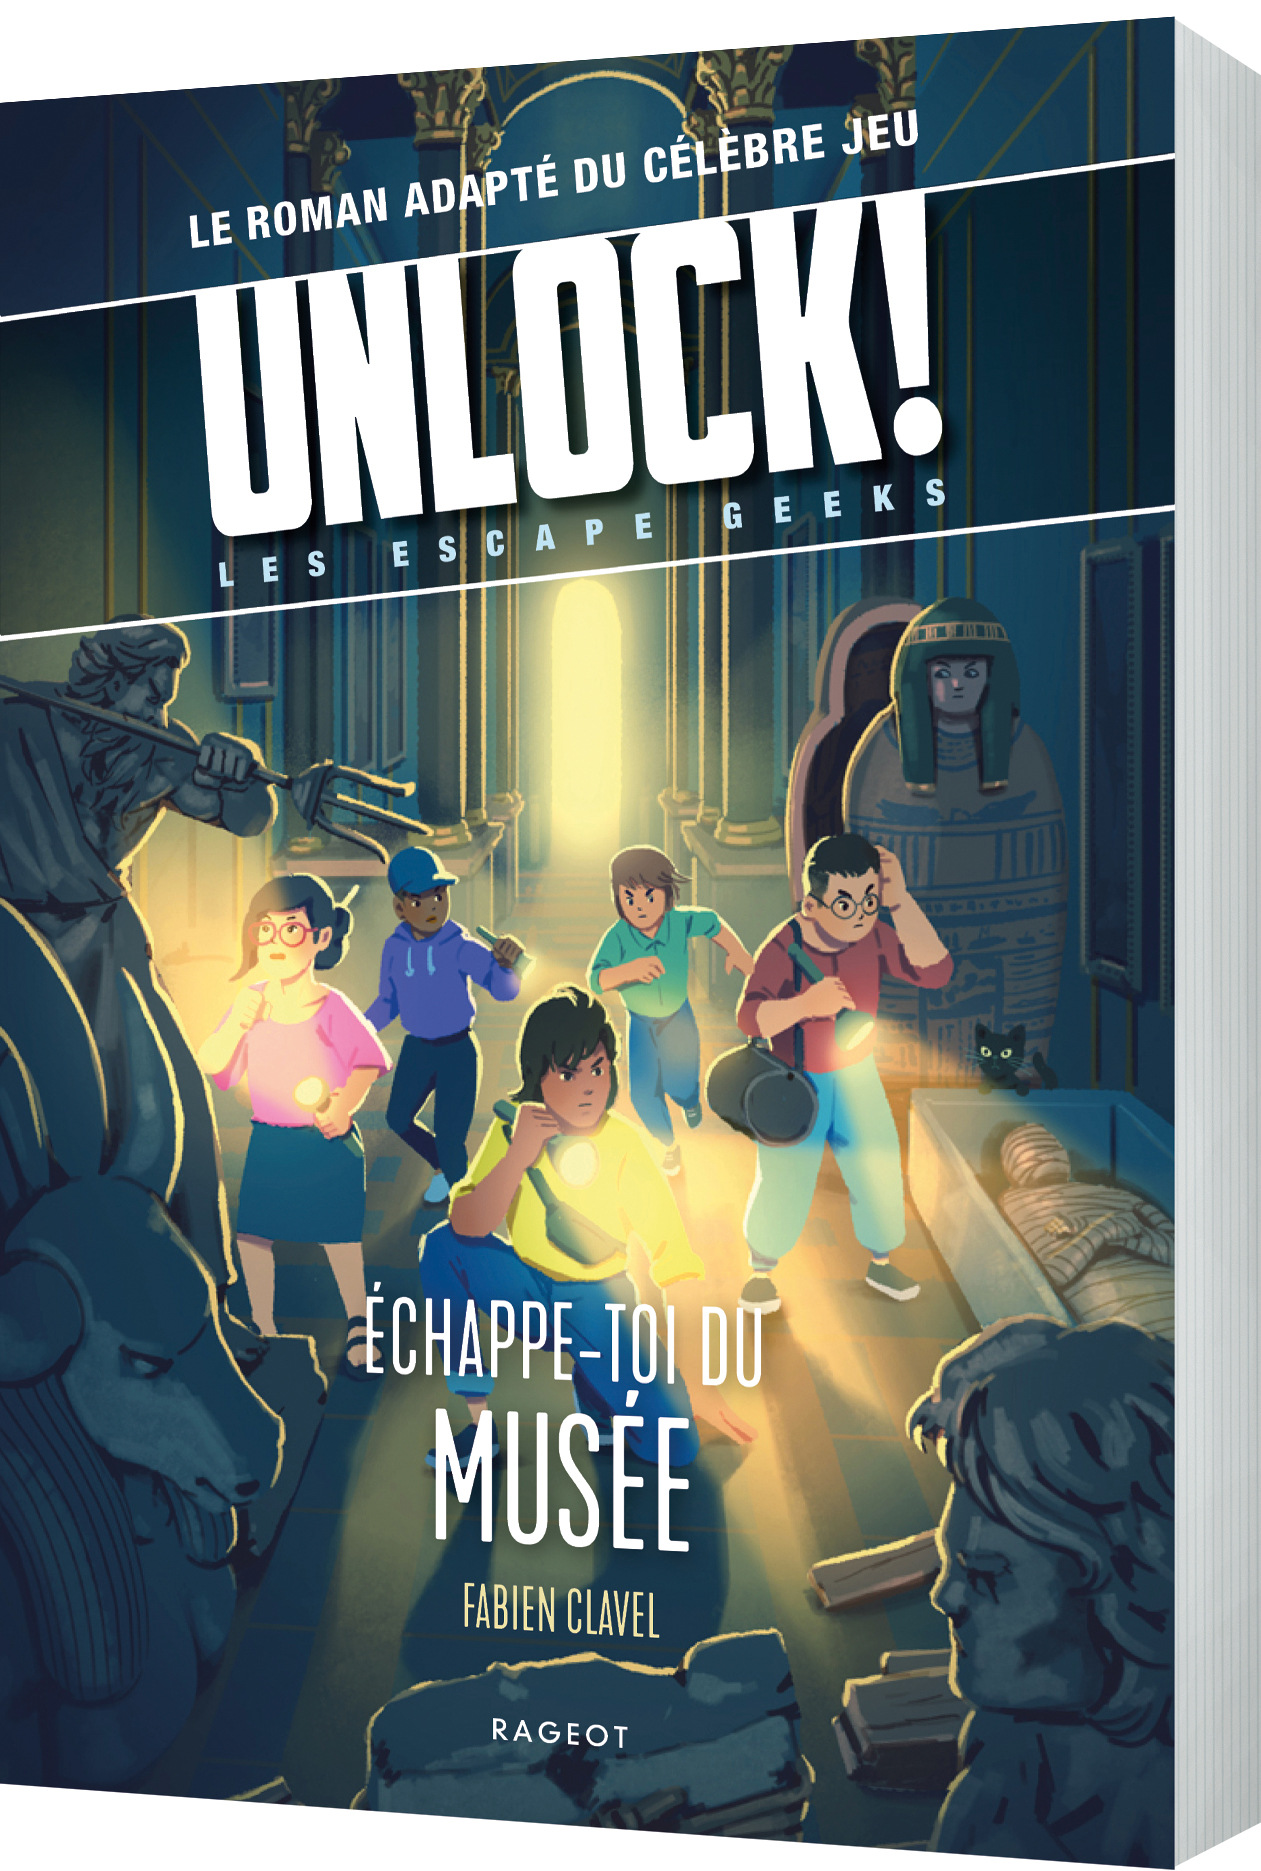 Unlock - Livre Escape Geeks - Échappe -Toi Du Musée (tome 3)